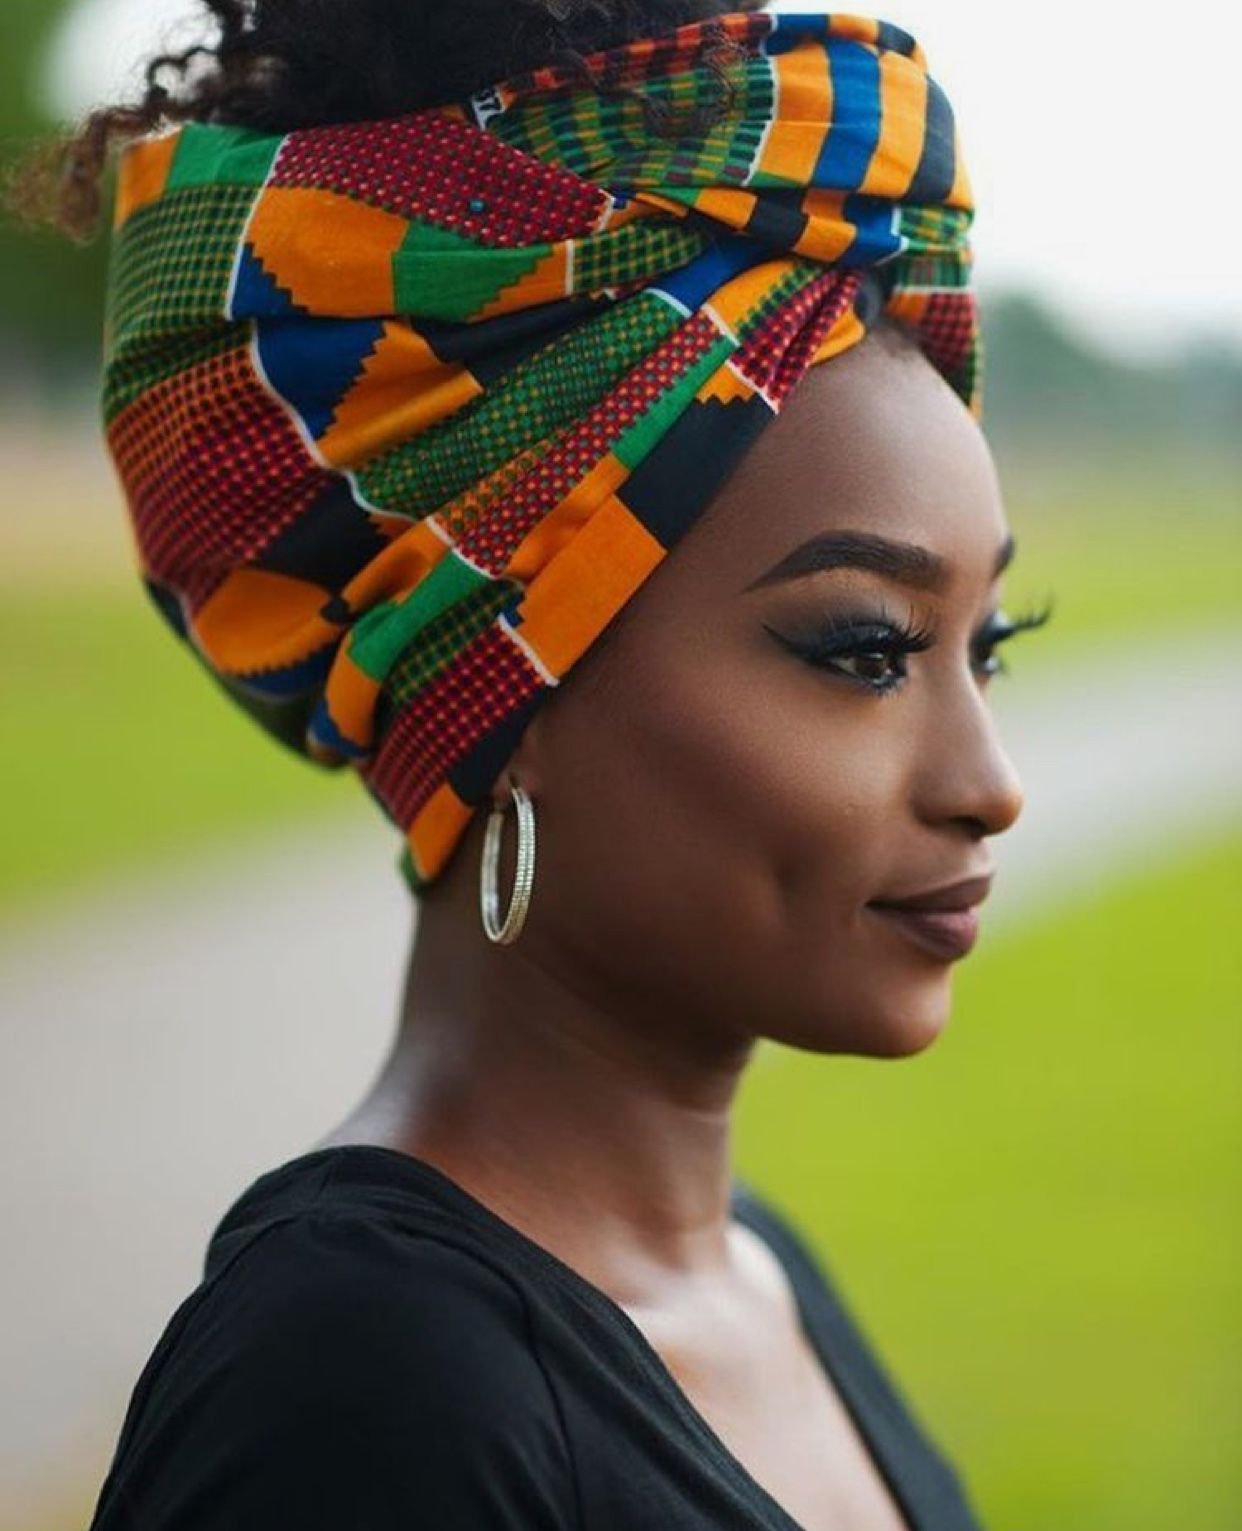 Красивые девушки африки